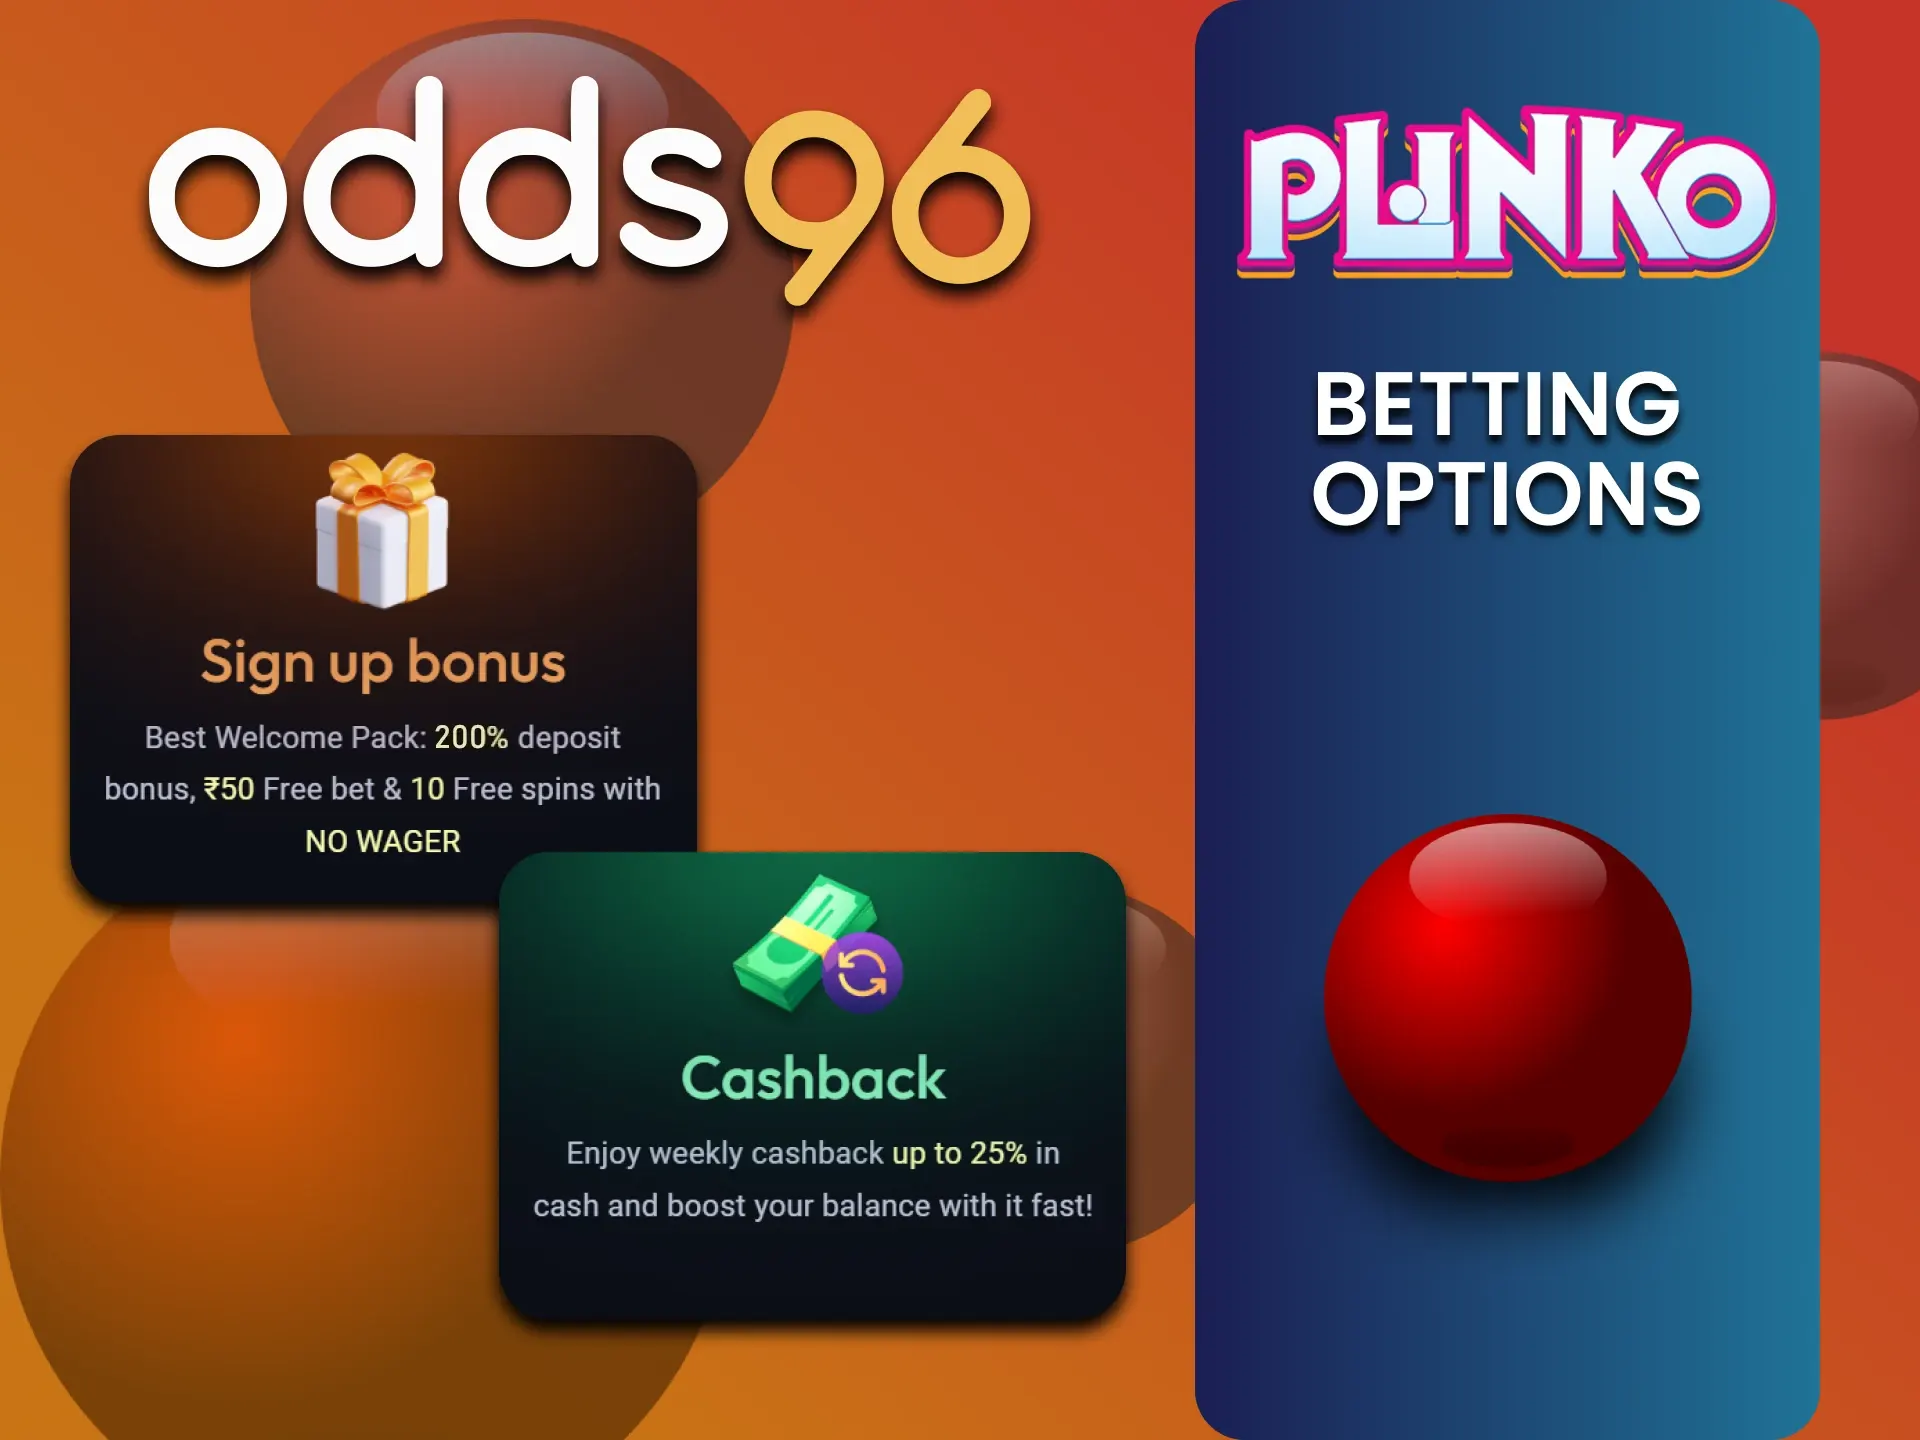 Odds96 gives bonuses for Plinko players.